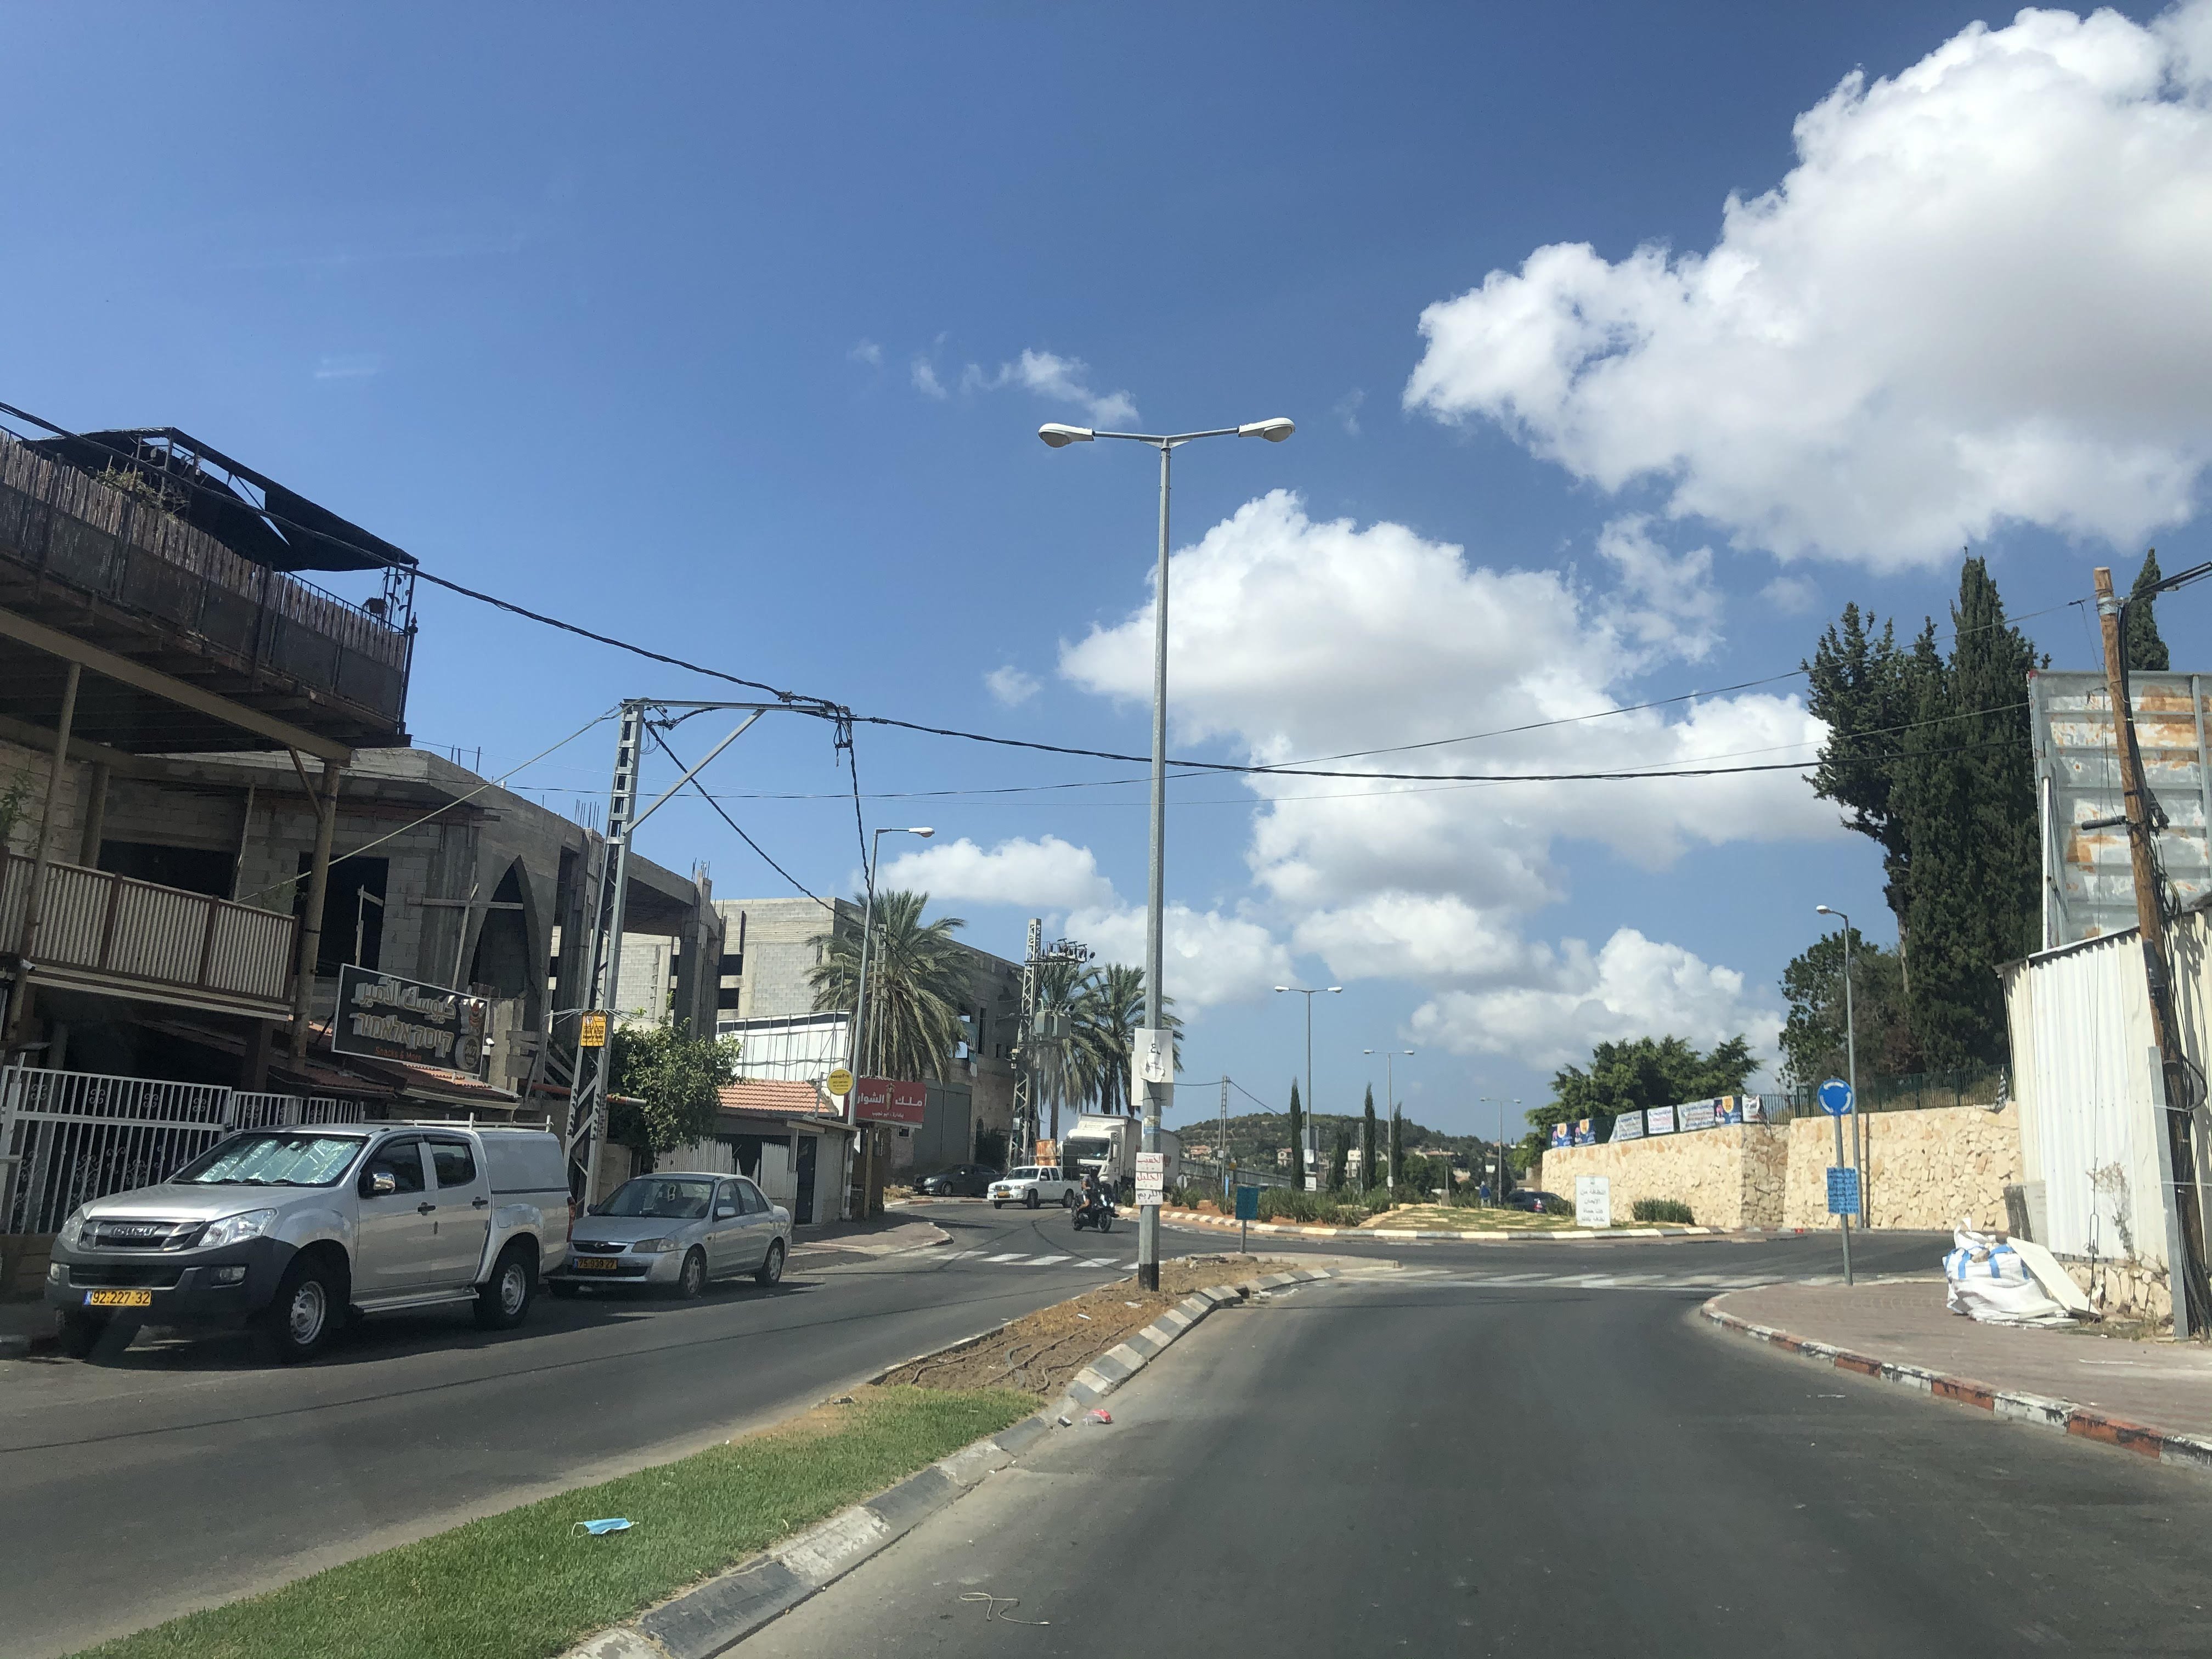 بعد تشديد التقييدات: بلدات وادي عارة تشهد حركة خفيفة للمواطنين والشوارع شبه خالية-0